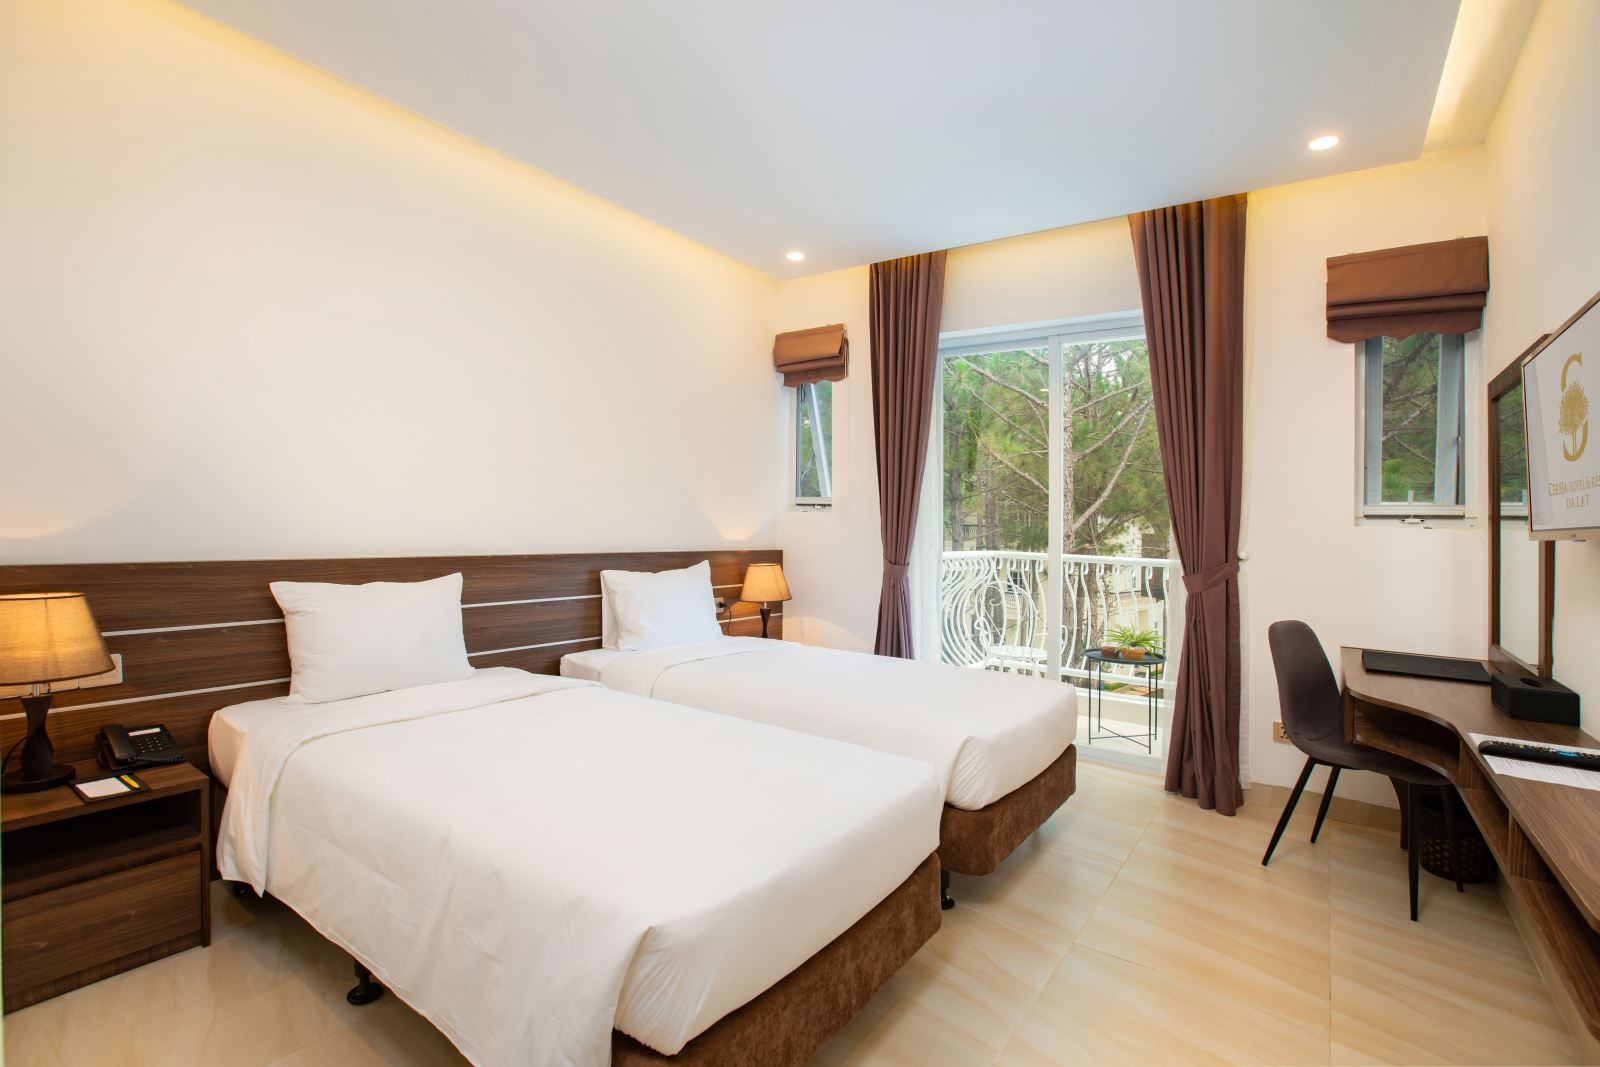 Cereja Hotel & Resort Dalat: Ngôi làng Pháp thanh lịch giữa núi đồi